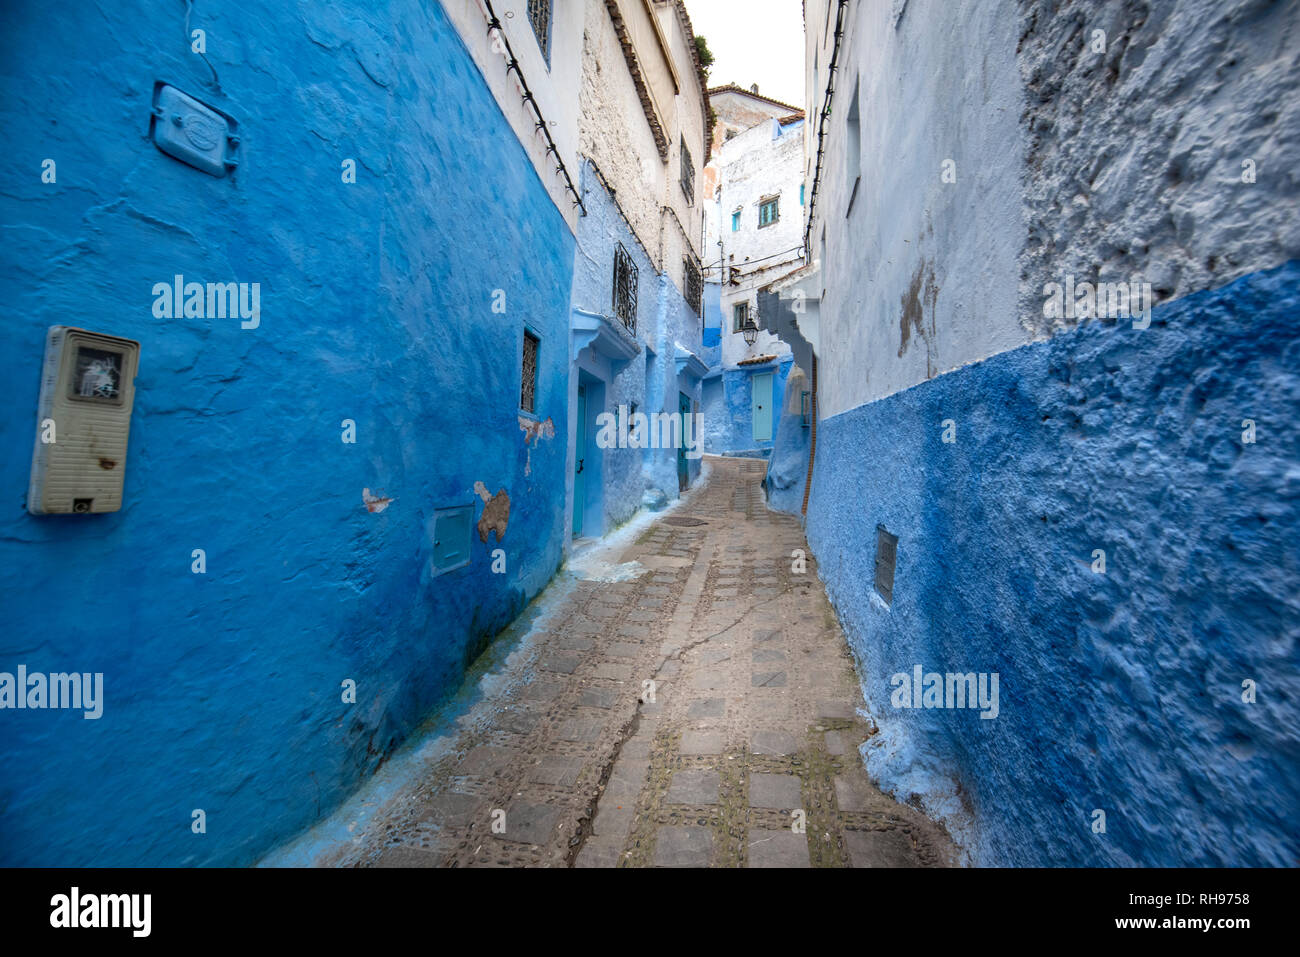 Belle vue sur la ville bleue dans la médina. Des détails architecturaux traditionnels marocains et des maisons peintes à Chefchaouen, Maroc avec la porte de la rue. Banque D'Images